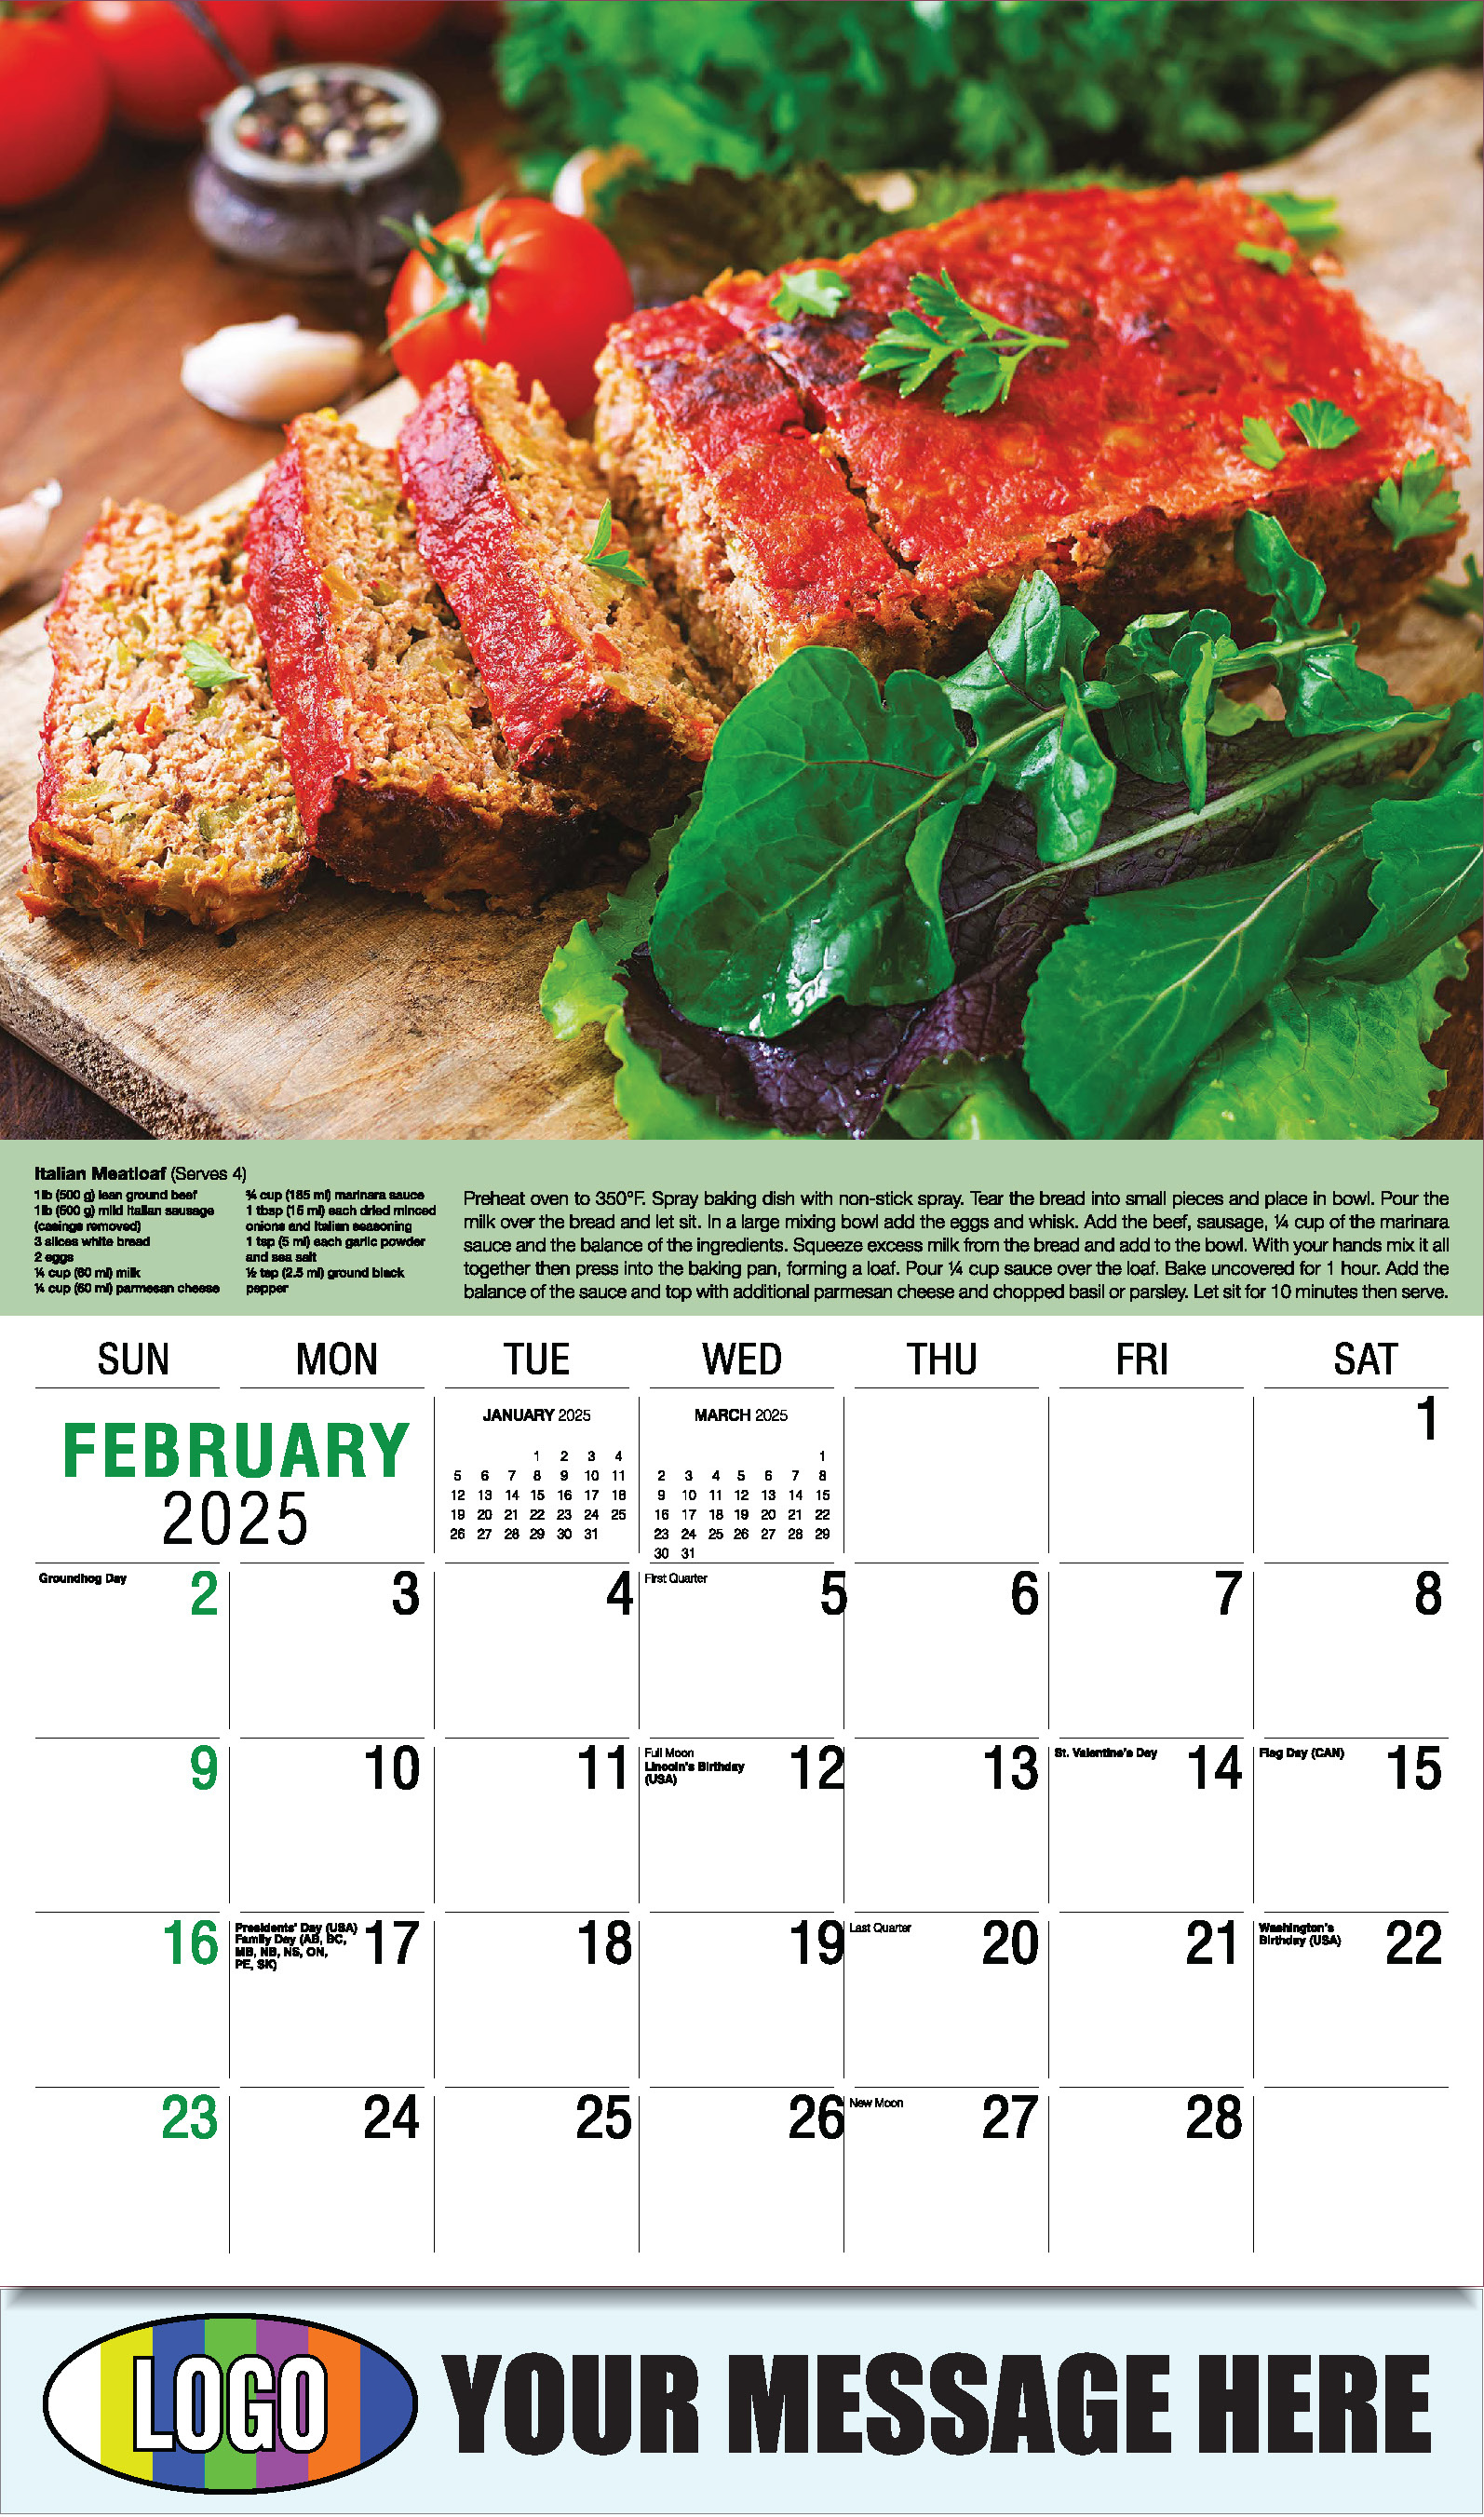 Recipes 2025 Business Promotional Calendar - February